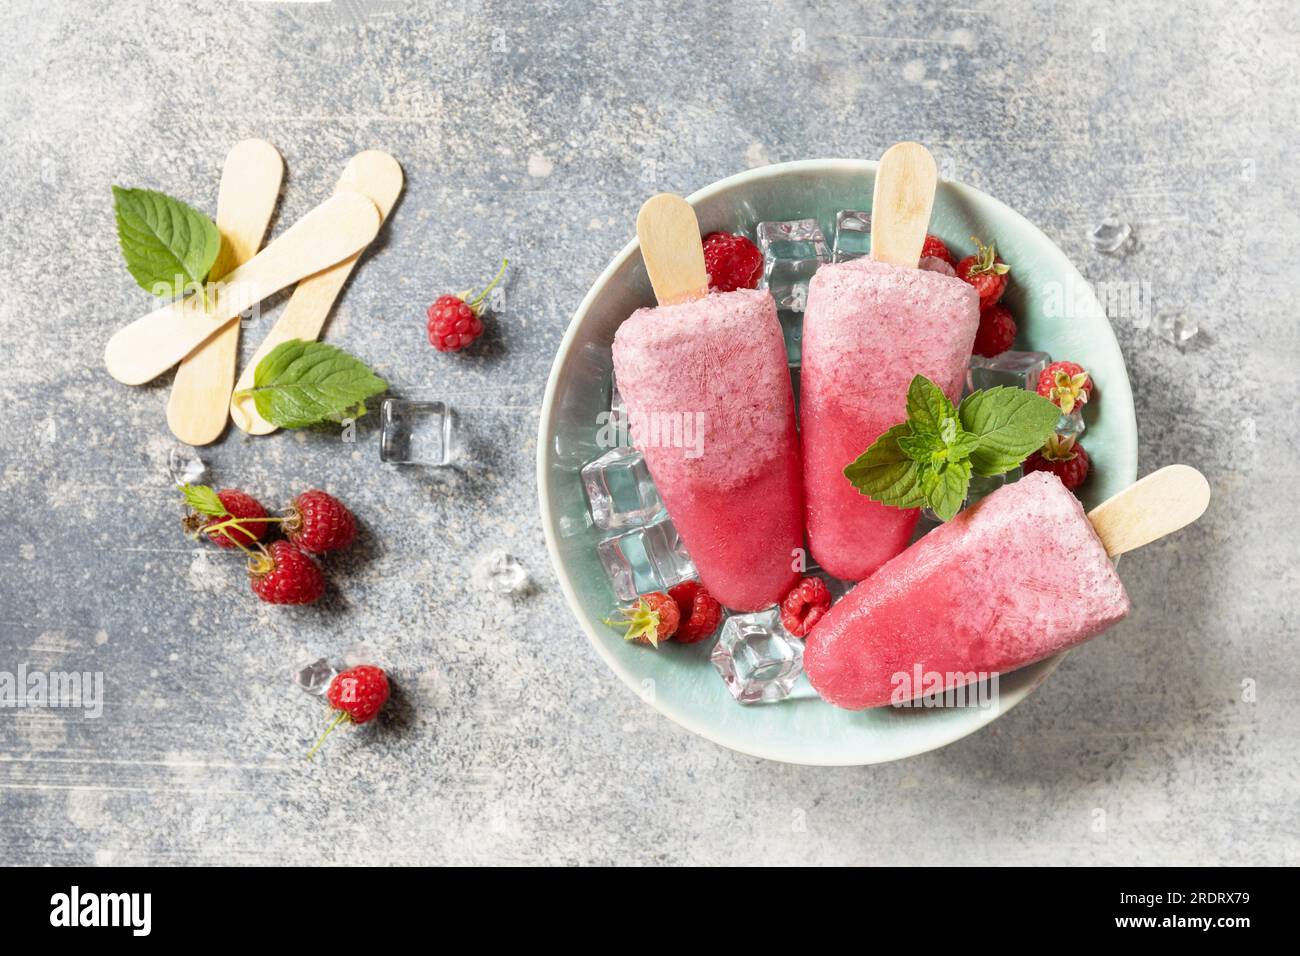 Popsicles de framboise maison avec yaourt et framboises sur un fond de pierre grise. Crème glacée. Dessert d'été. Vue d'en haut. Banque D'Images